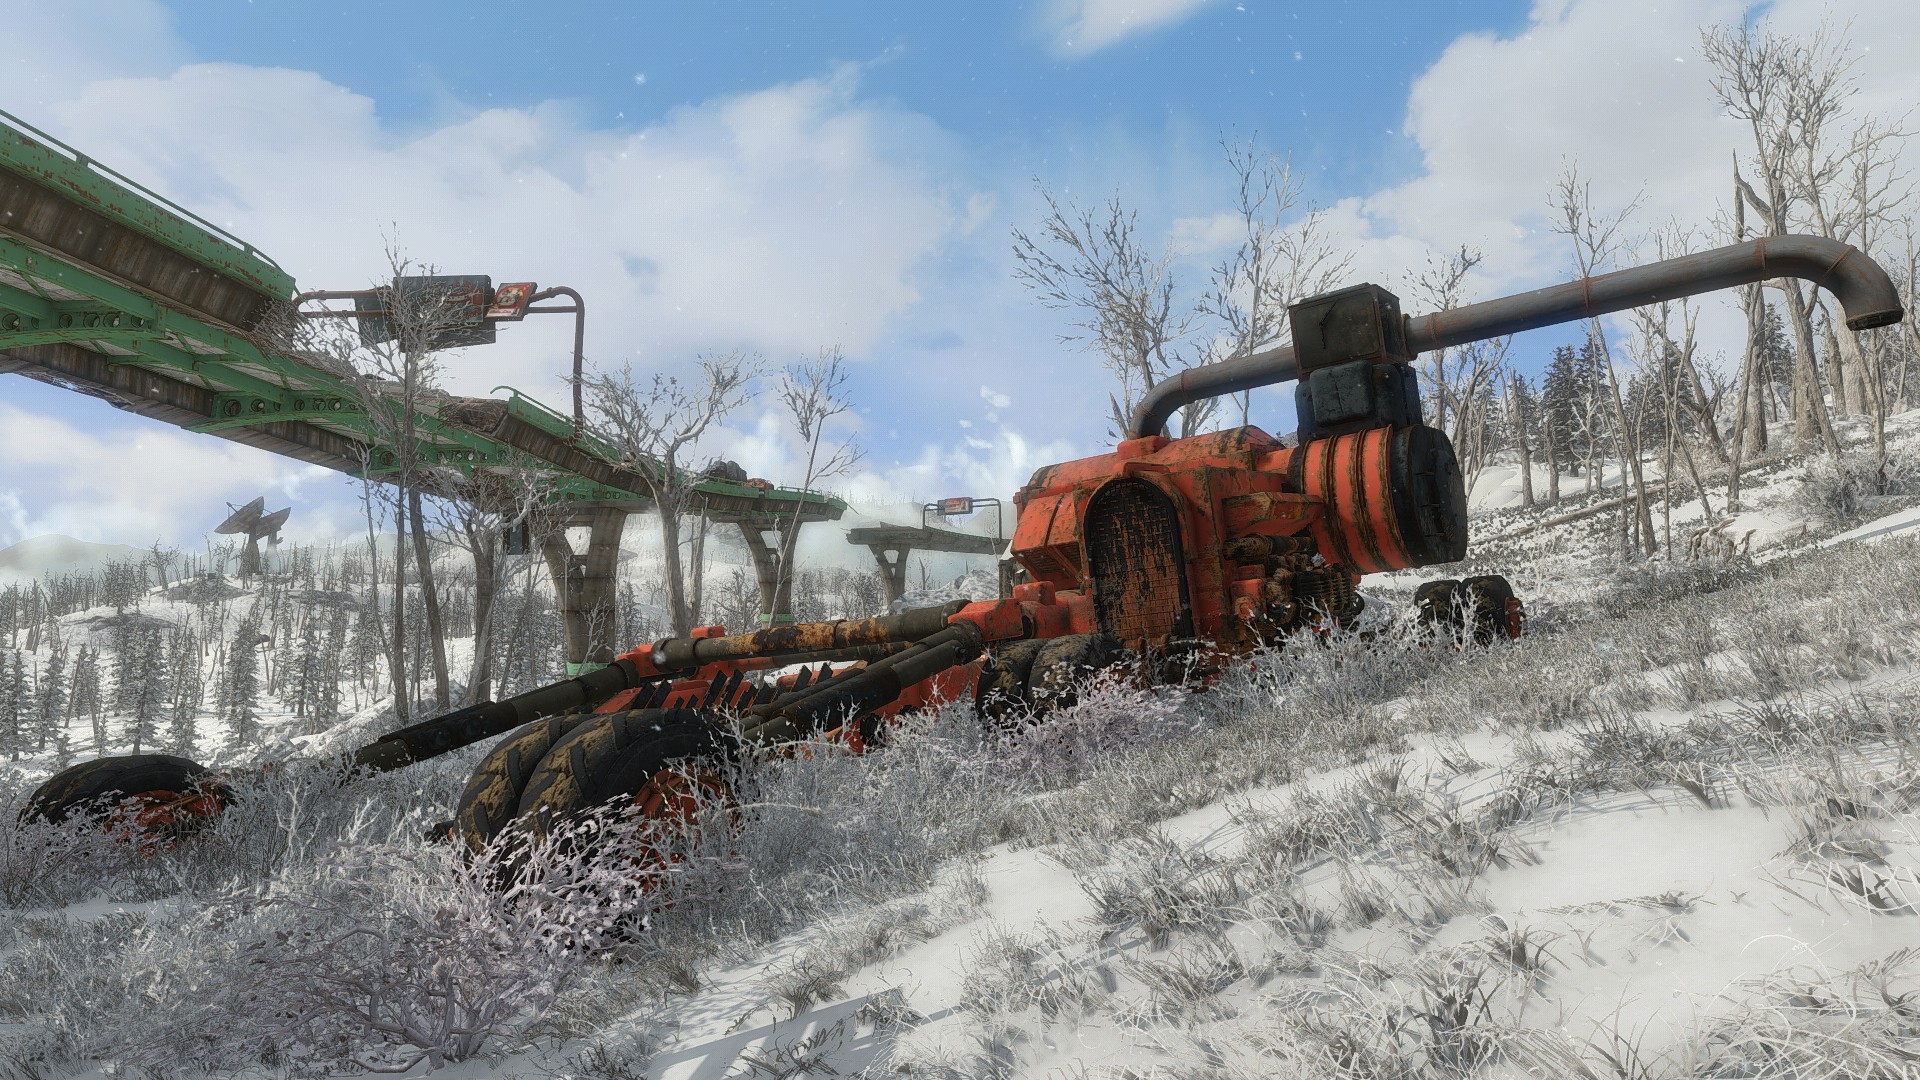 General 1920x1080 Fallout 4 PC gaming winter screen shot